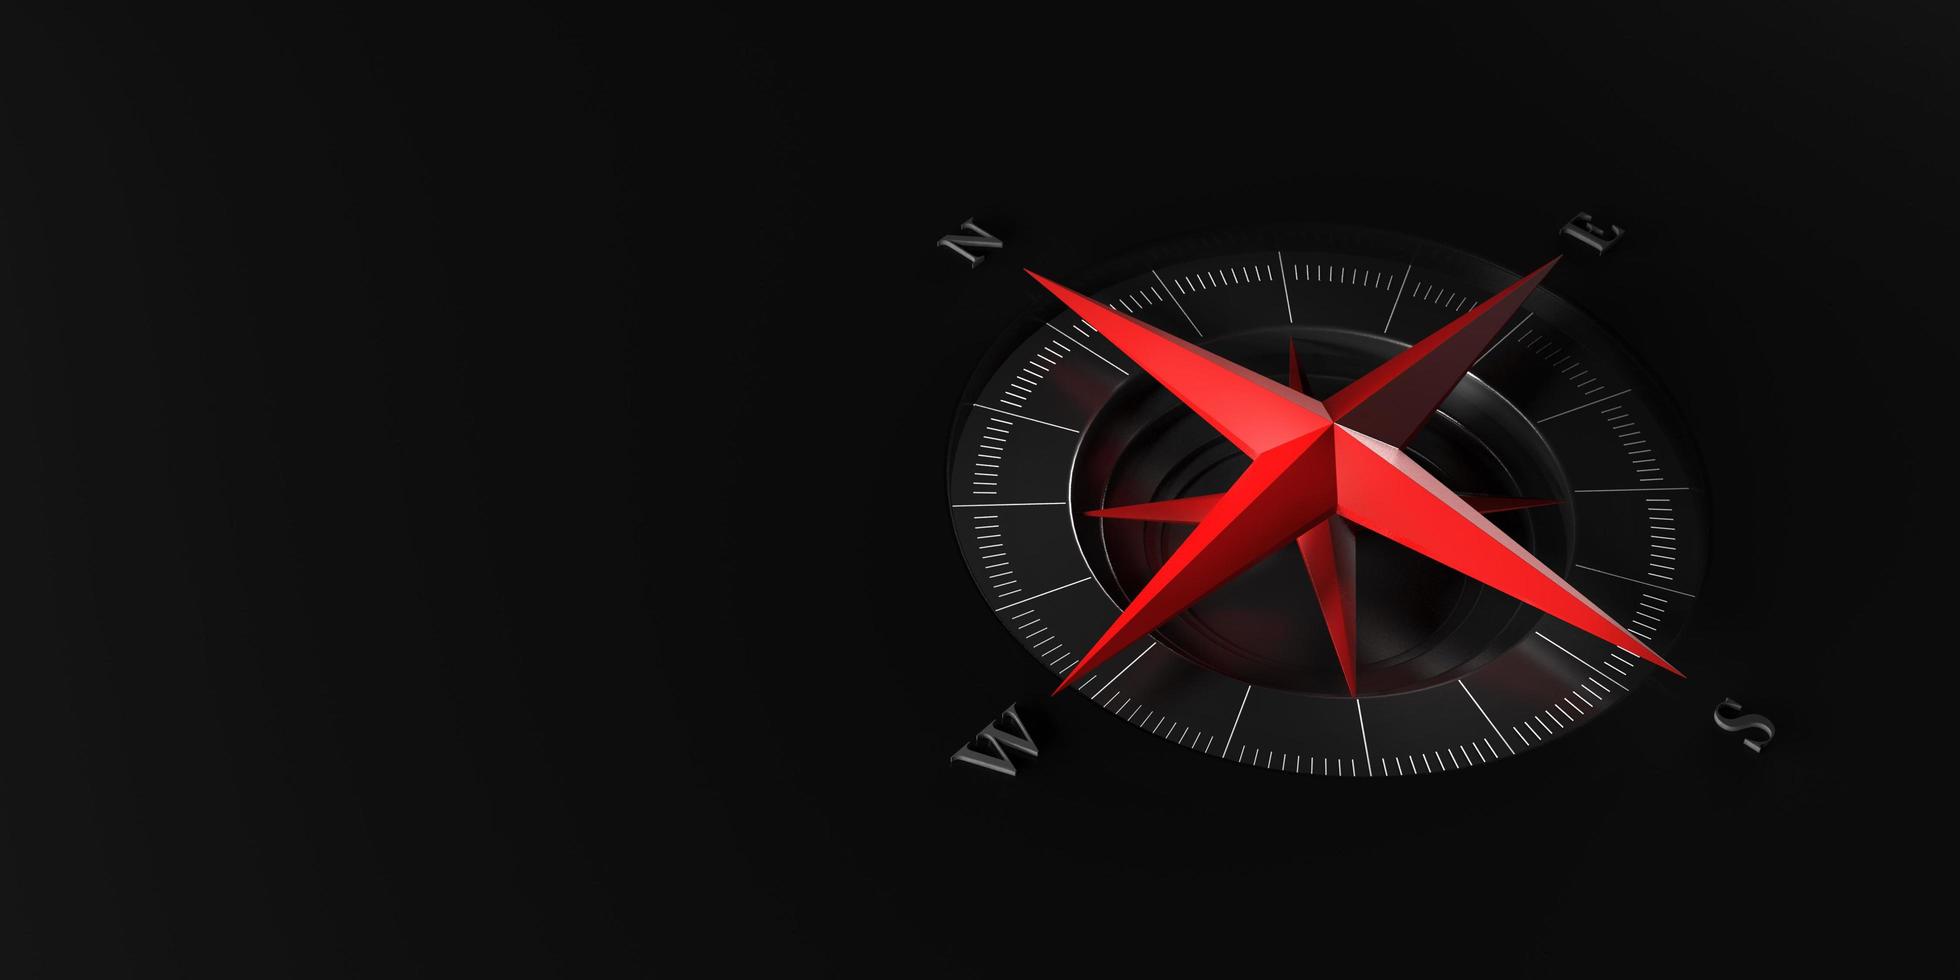 rood modern kompas op zwarte achtergrond met kopie ruimte voor tekst of design.3d rendering foto